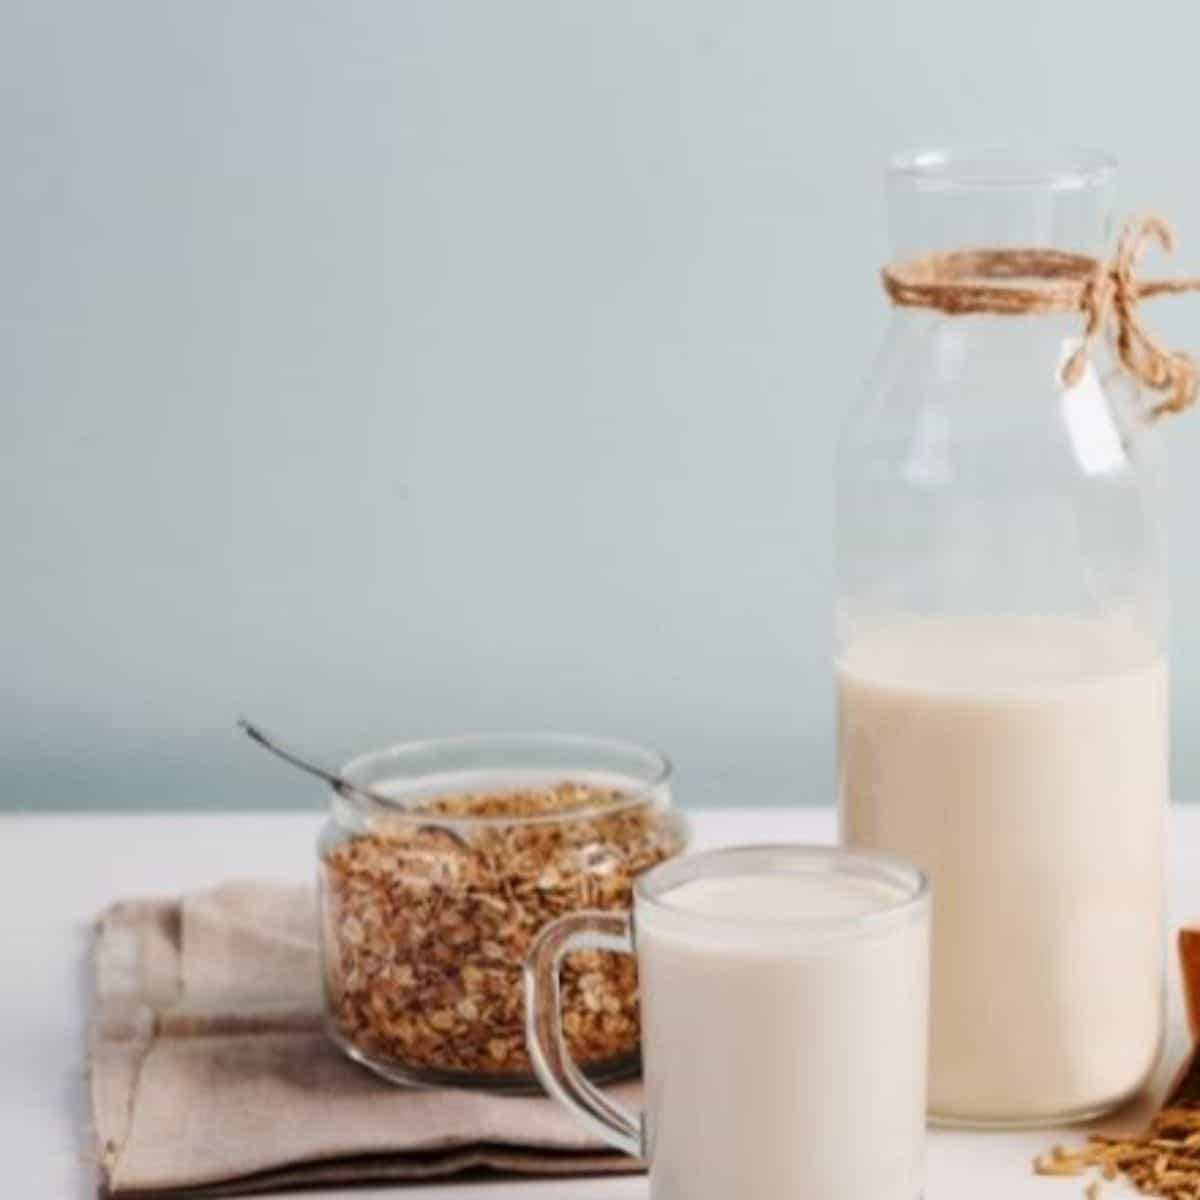 Homemade oat milk made in a blender.